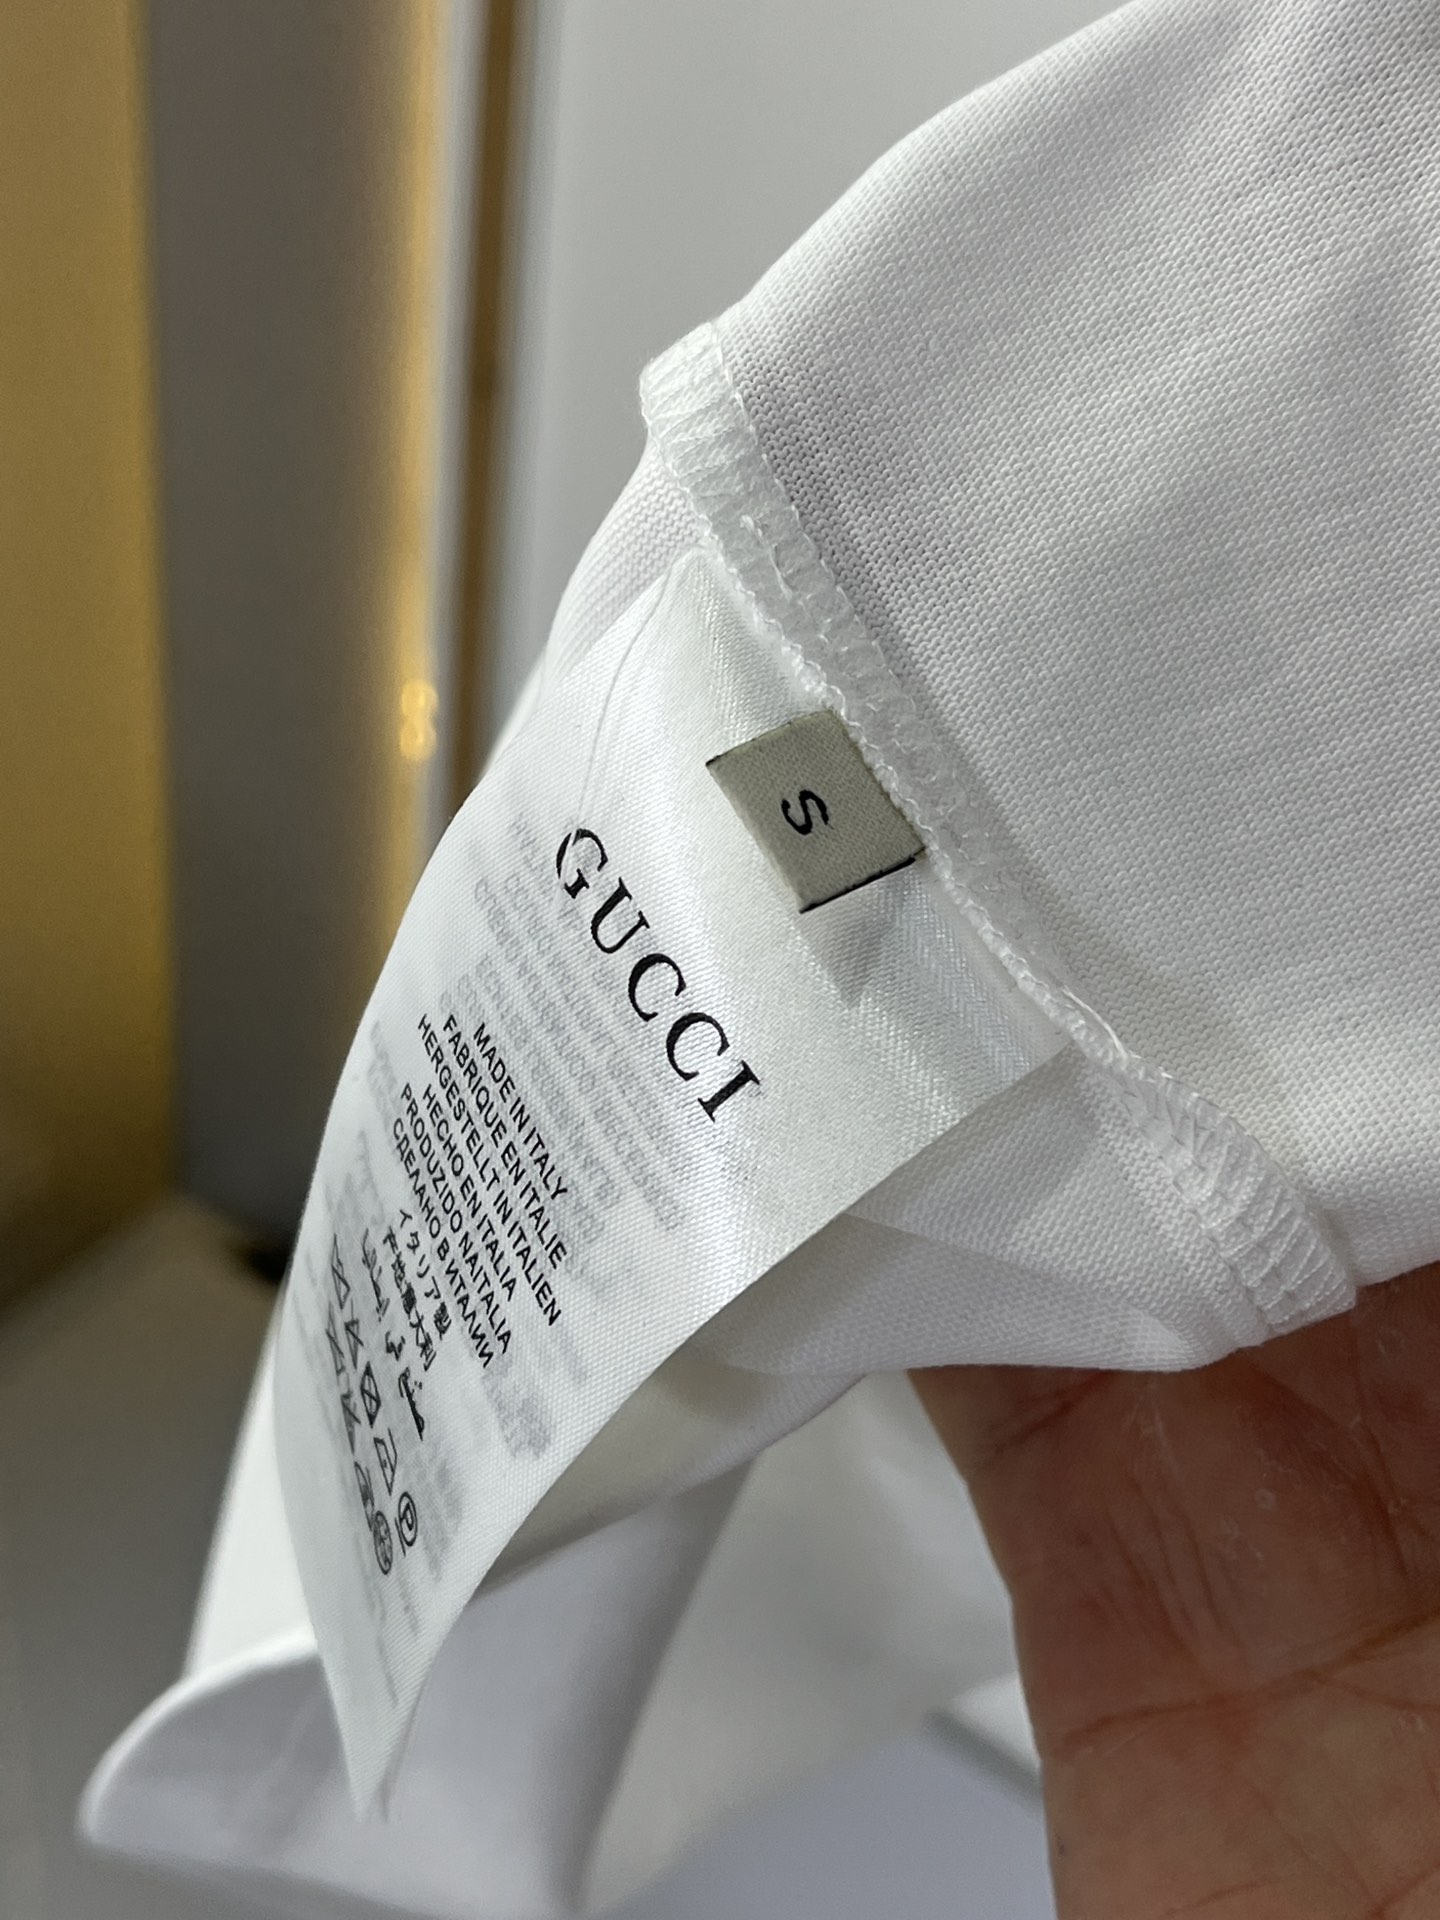 GuccSS春夏新款短袖T恤专柜同步发售原版复刻一比一定制原版面料五金简约大气时间前卫值得信任WW尺码推